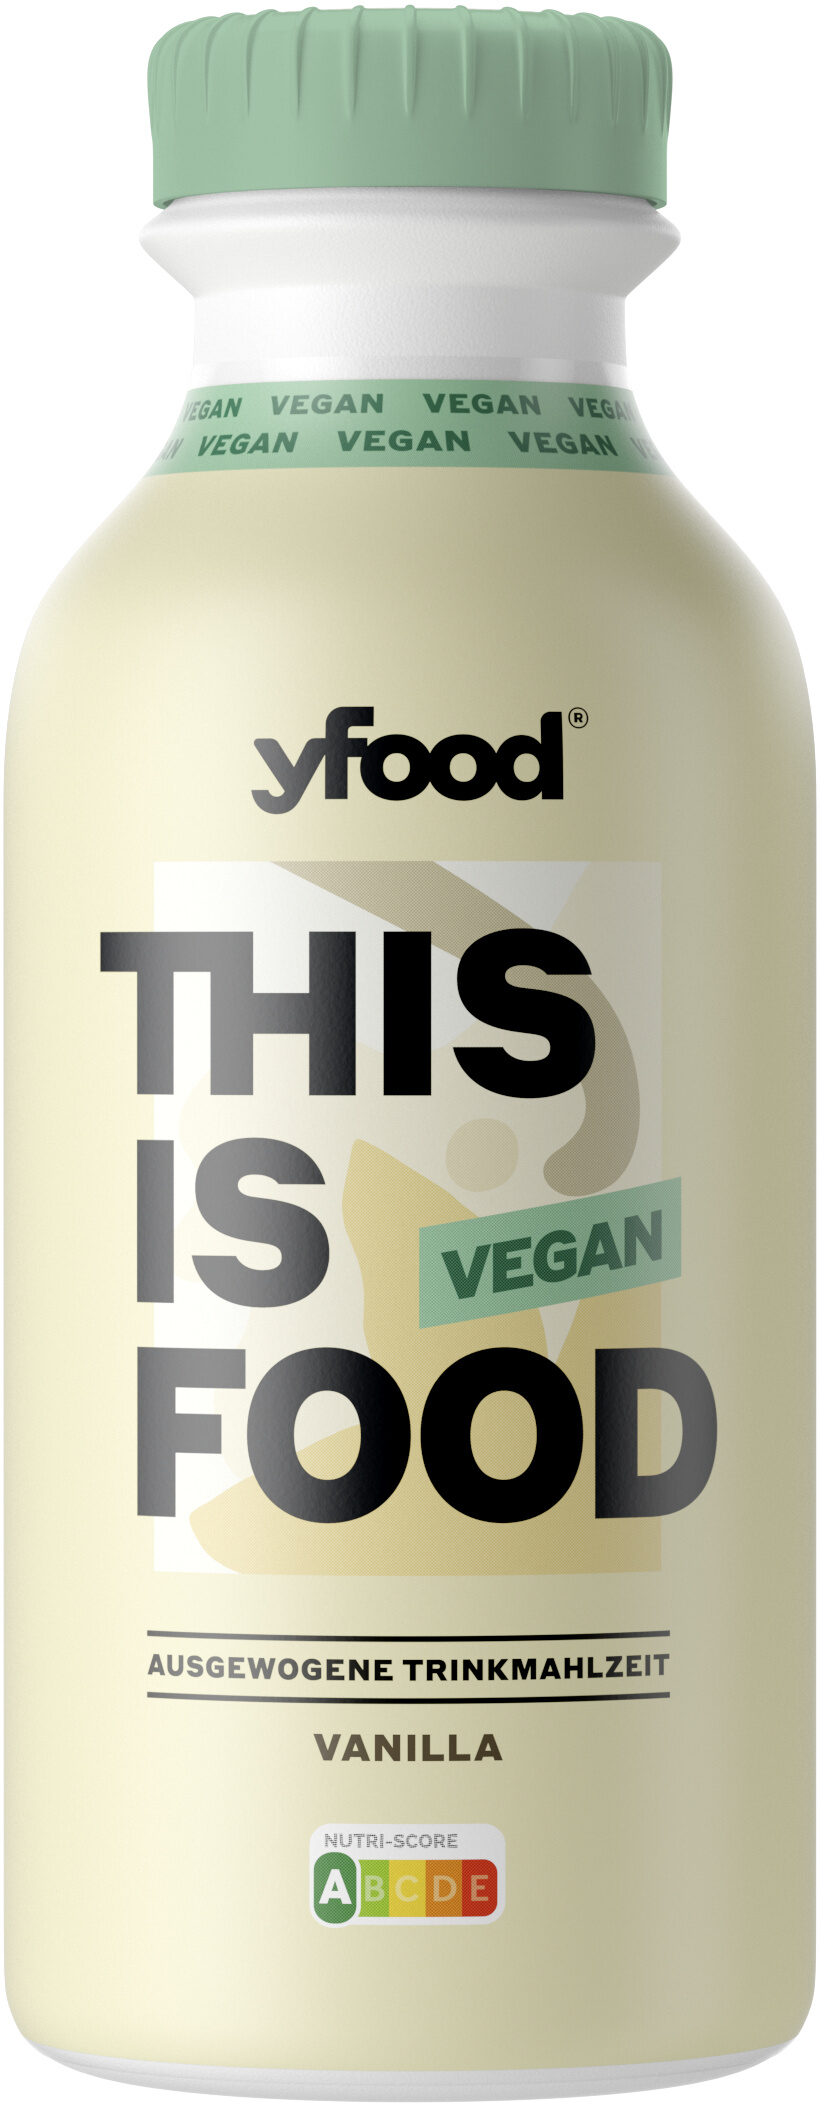 yfood Vegan Vanilla - Product - de